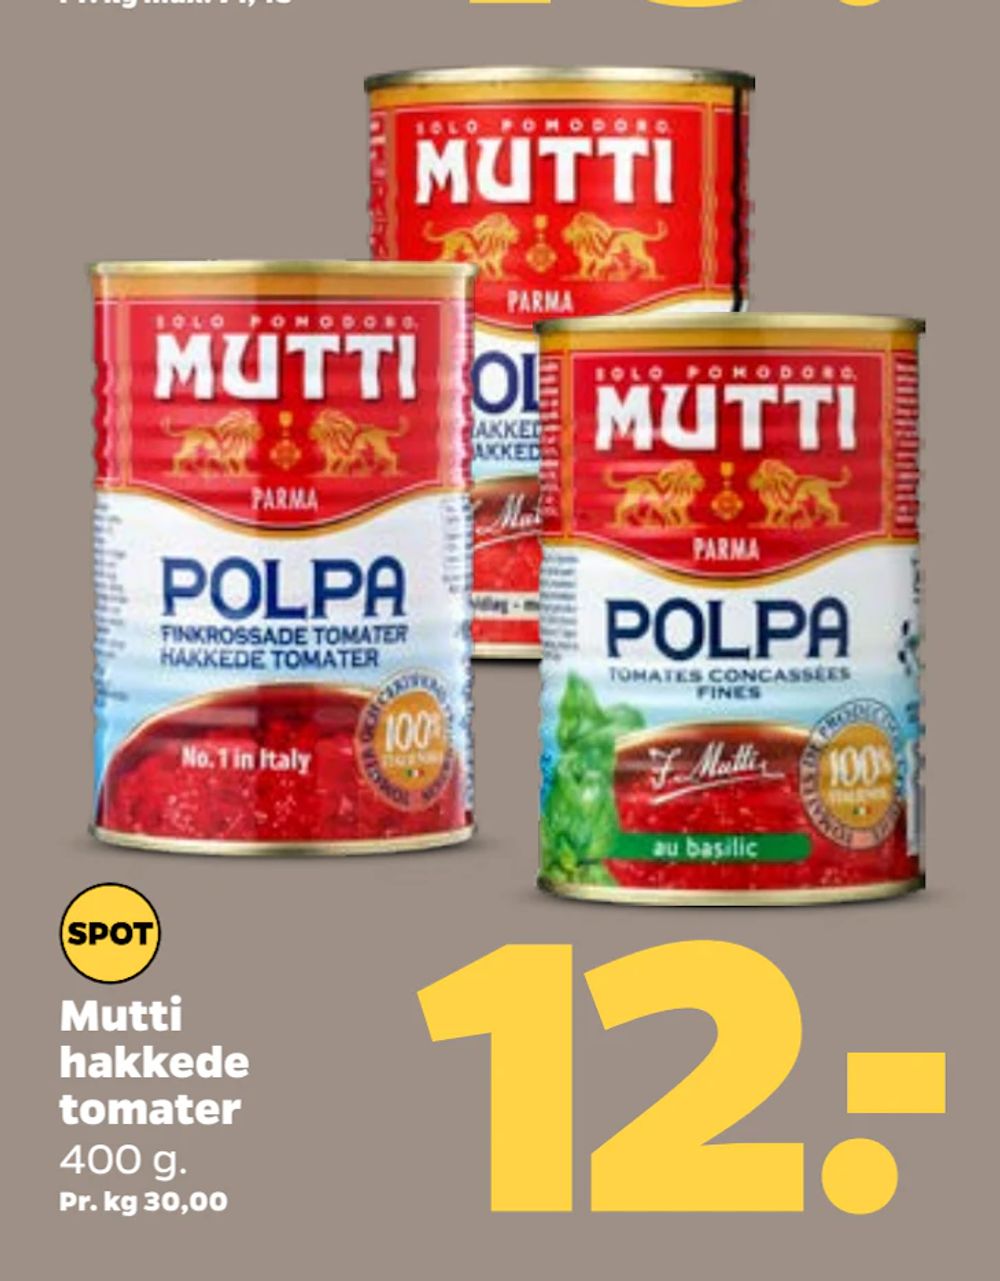 Tilbud på Mutti hakkede tomater fra Netto til 12 kr.